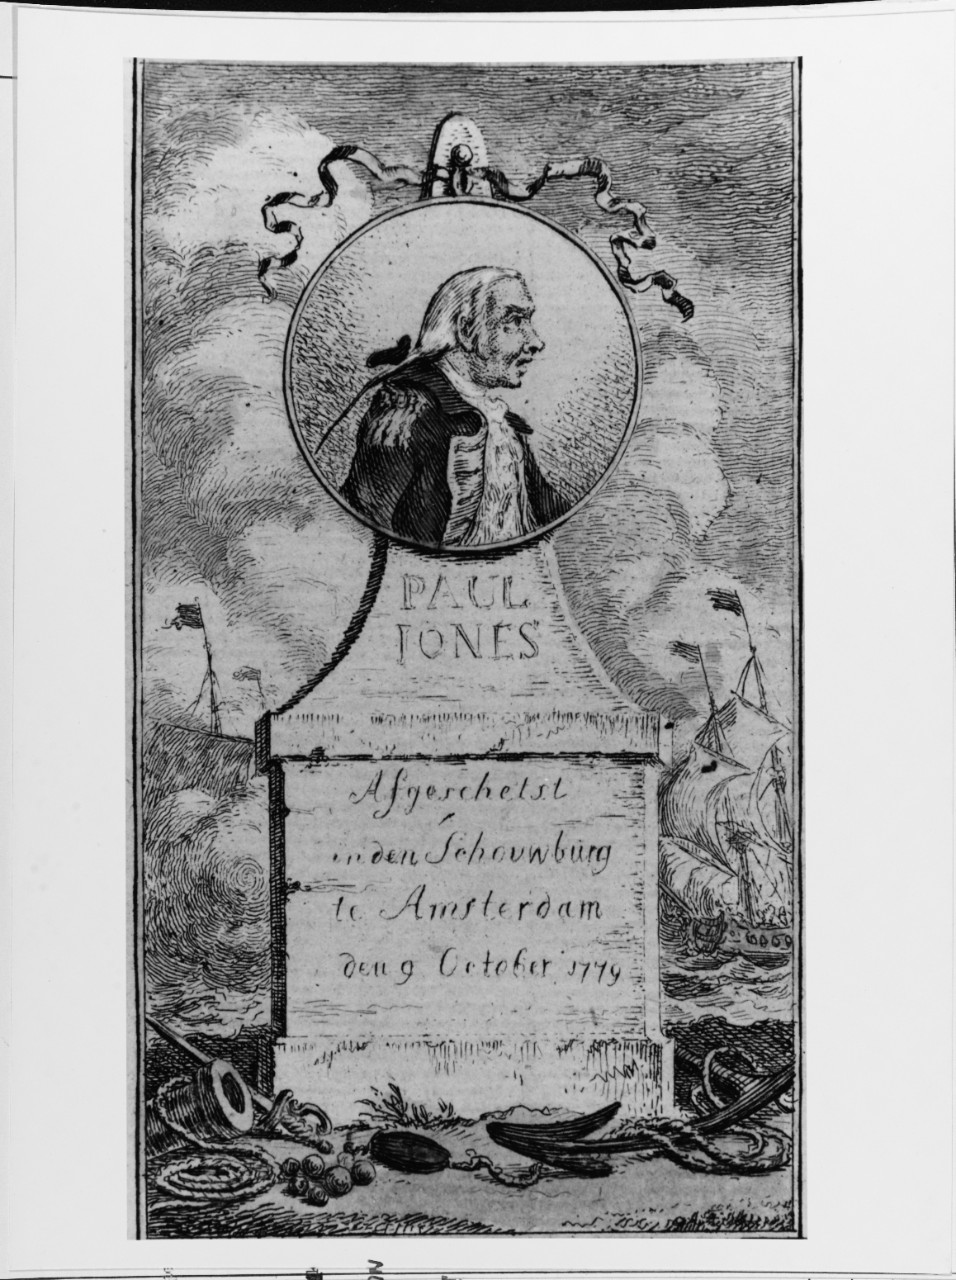 John Paul Jones (1747-1792)